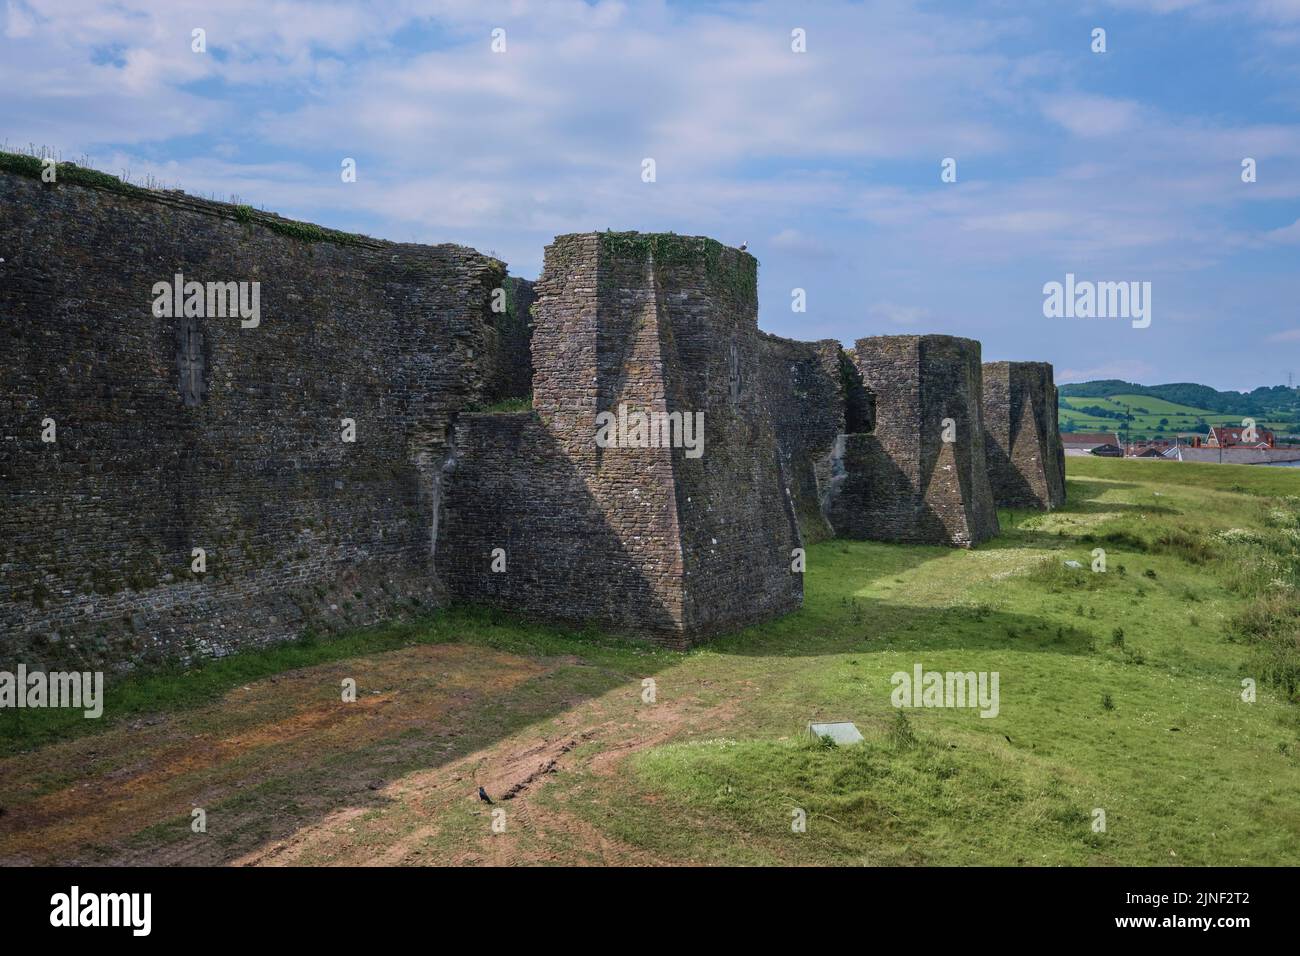 Vue sur les fortifications et tourelles du mur extérieur en pierre avec le fossé sec, maintenant la pelouse, l'herbe. Au château de Caerphilly à Caerphilly, Royaume-Uni. Banque D'Images